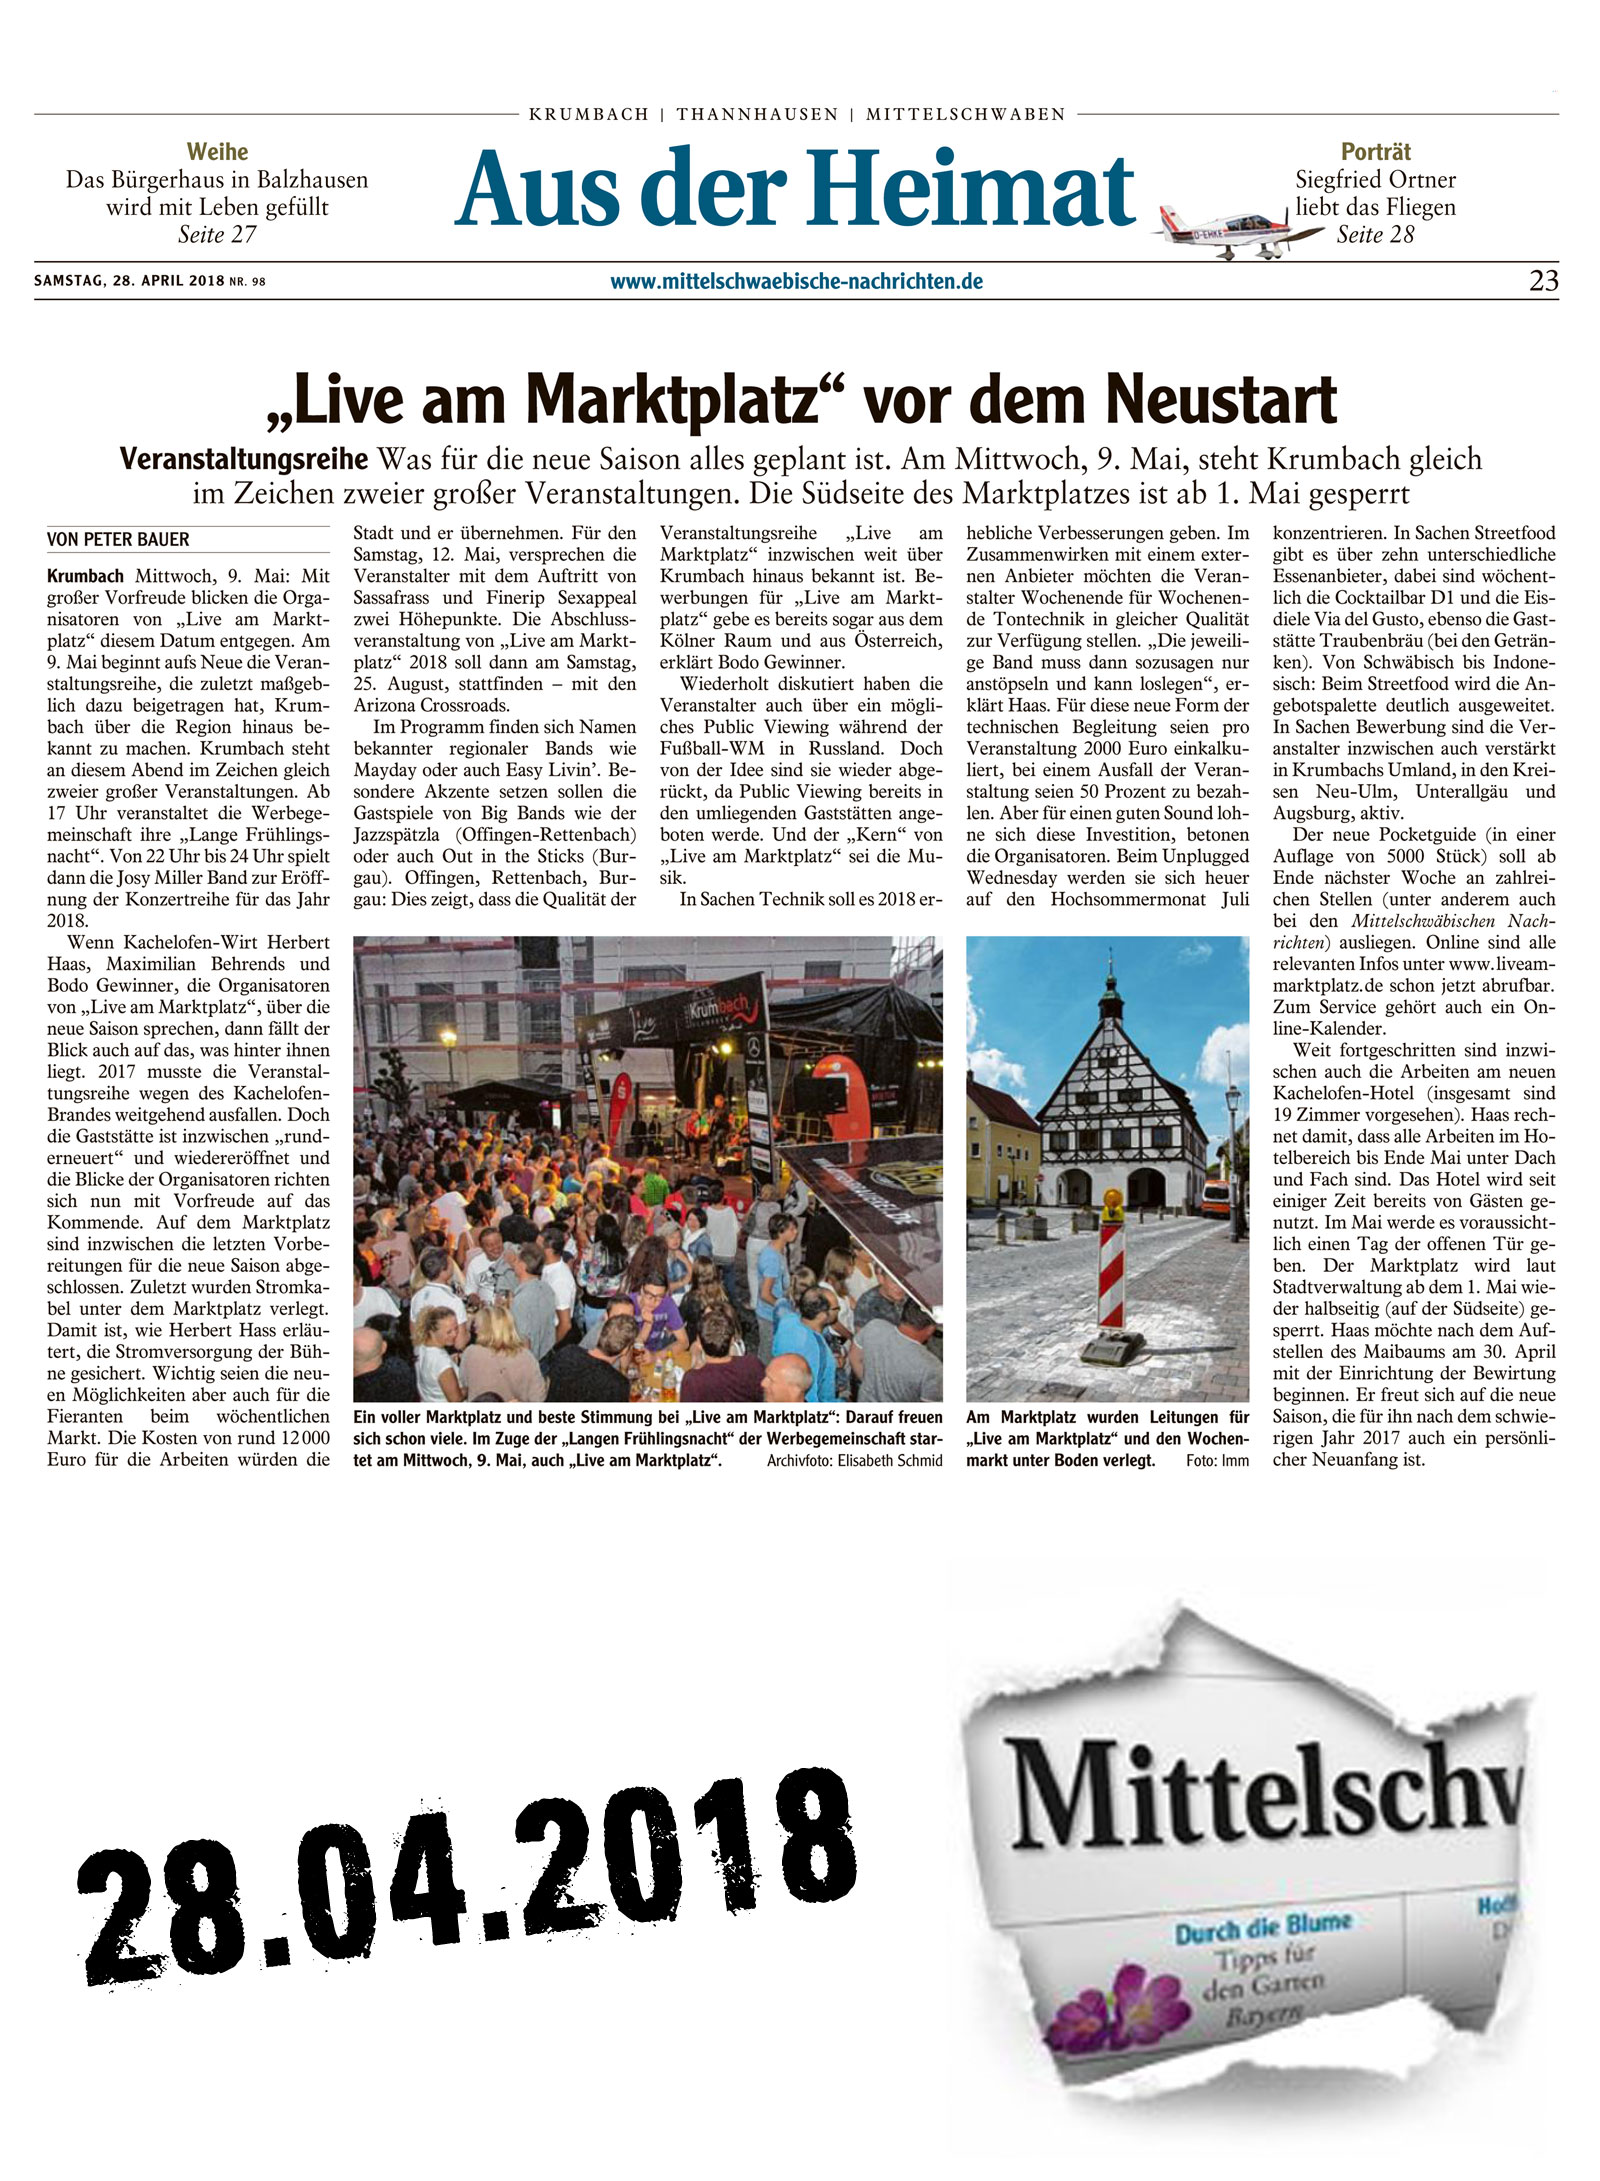 Mittelschwaebische Nachrichten vom 28.04.2018 "live am Marktplatz" vor dem Neustart